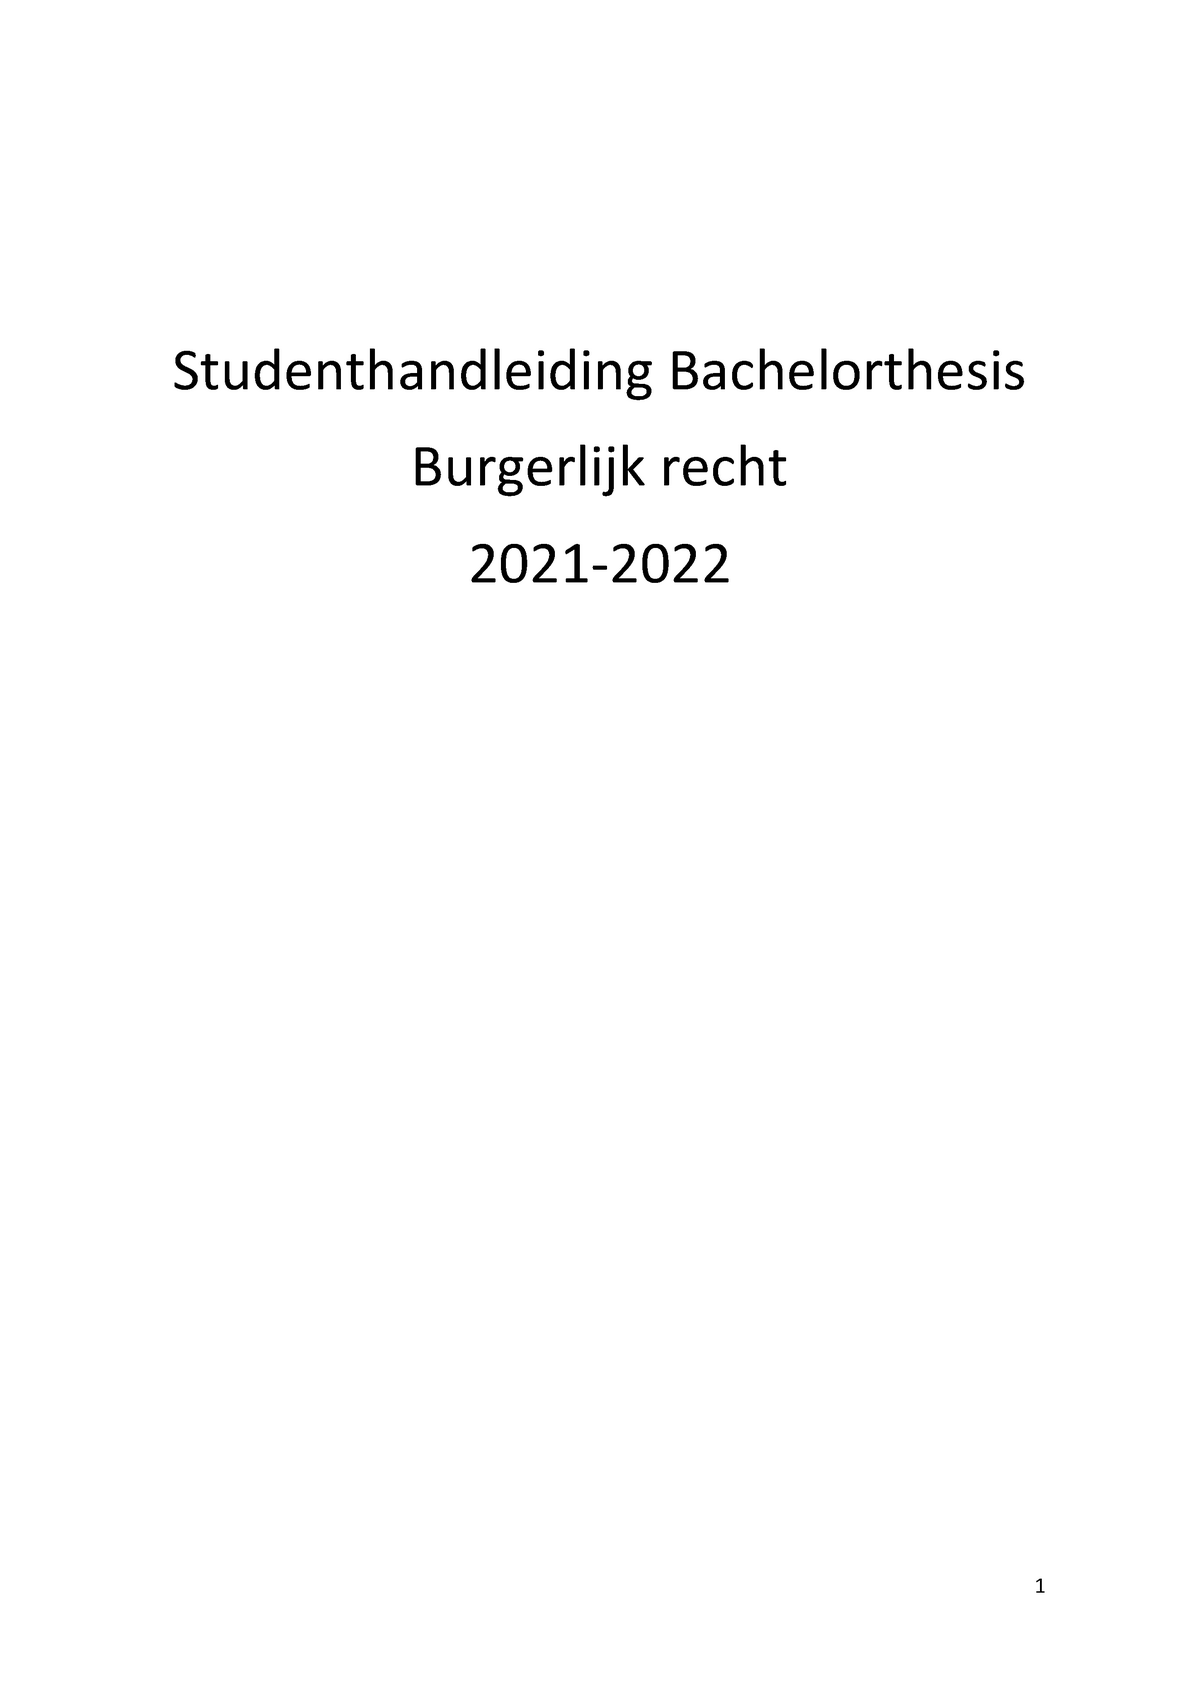 thesis repository radboud